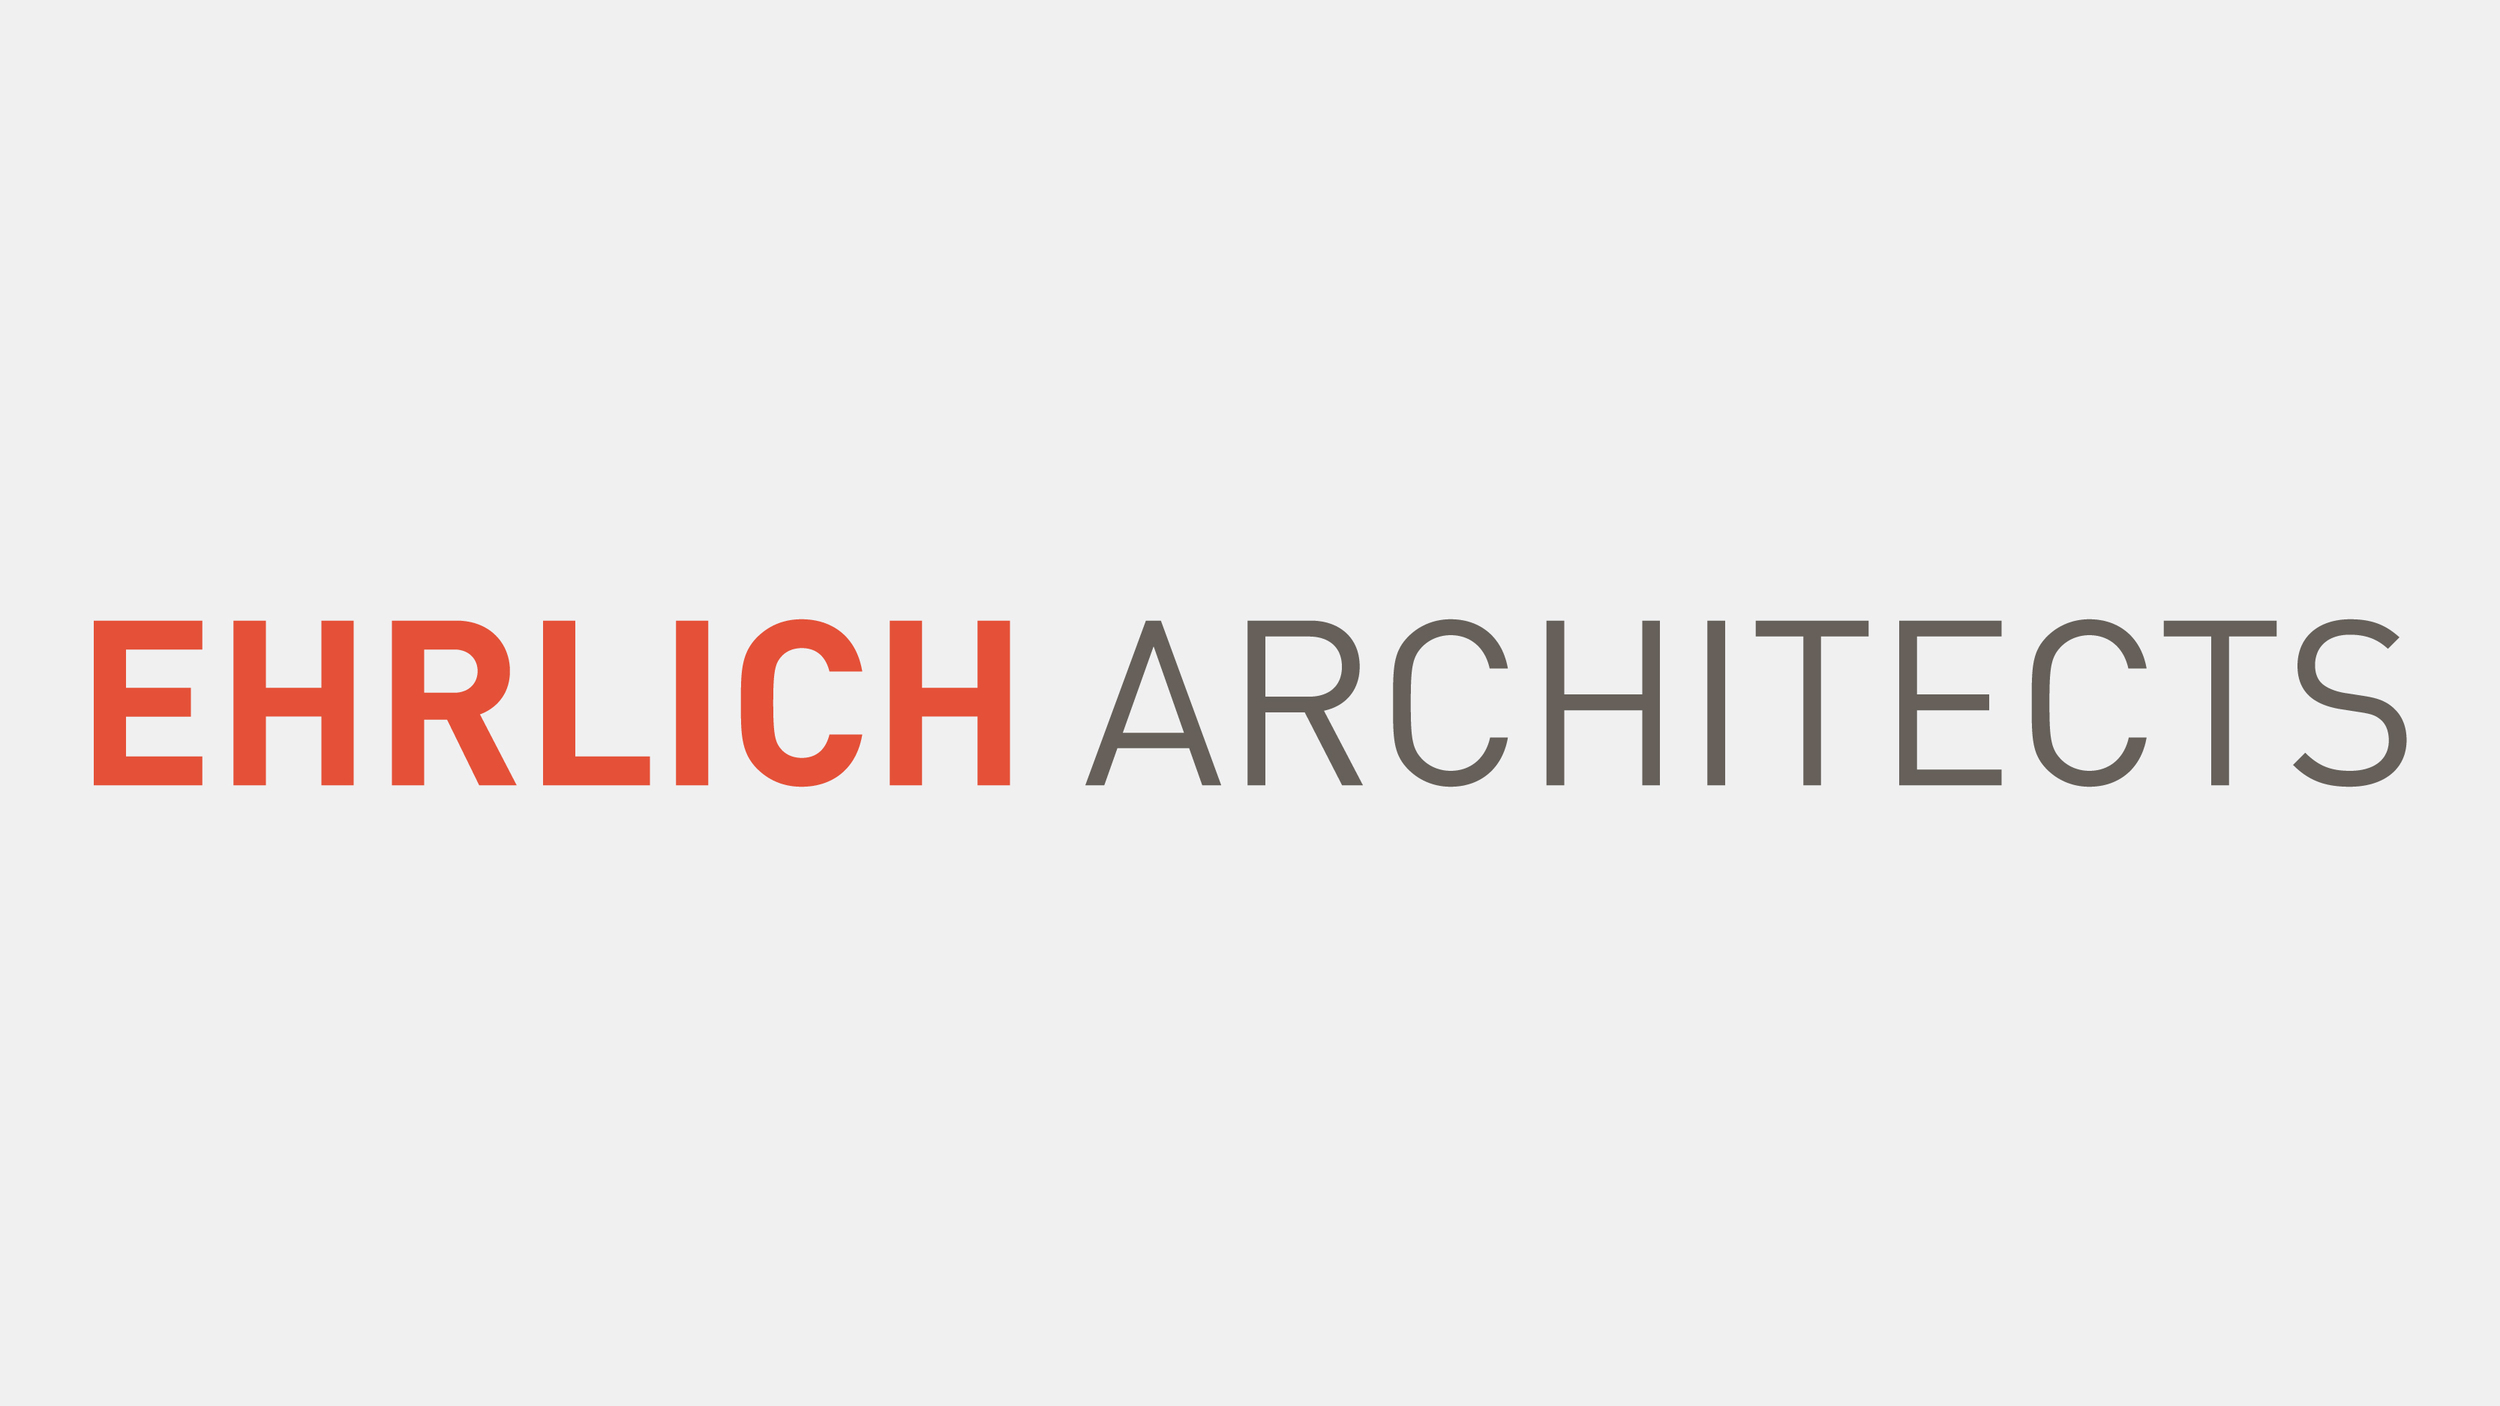 Erlich Architects